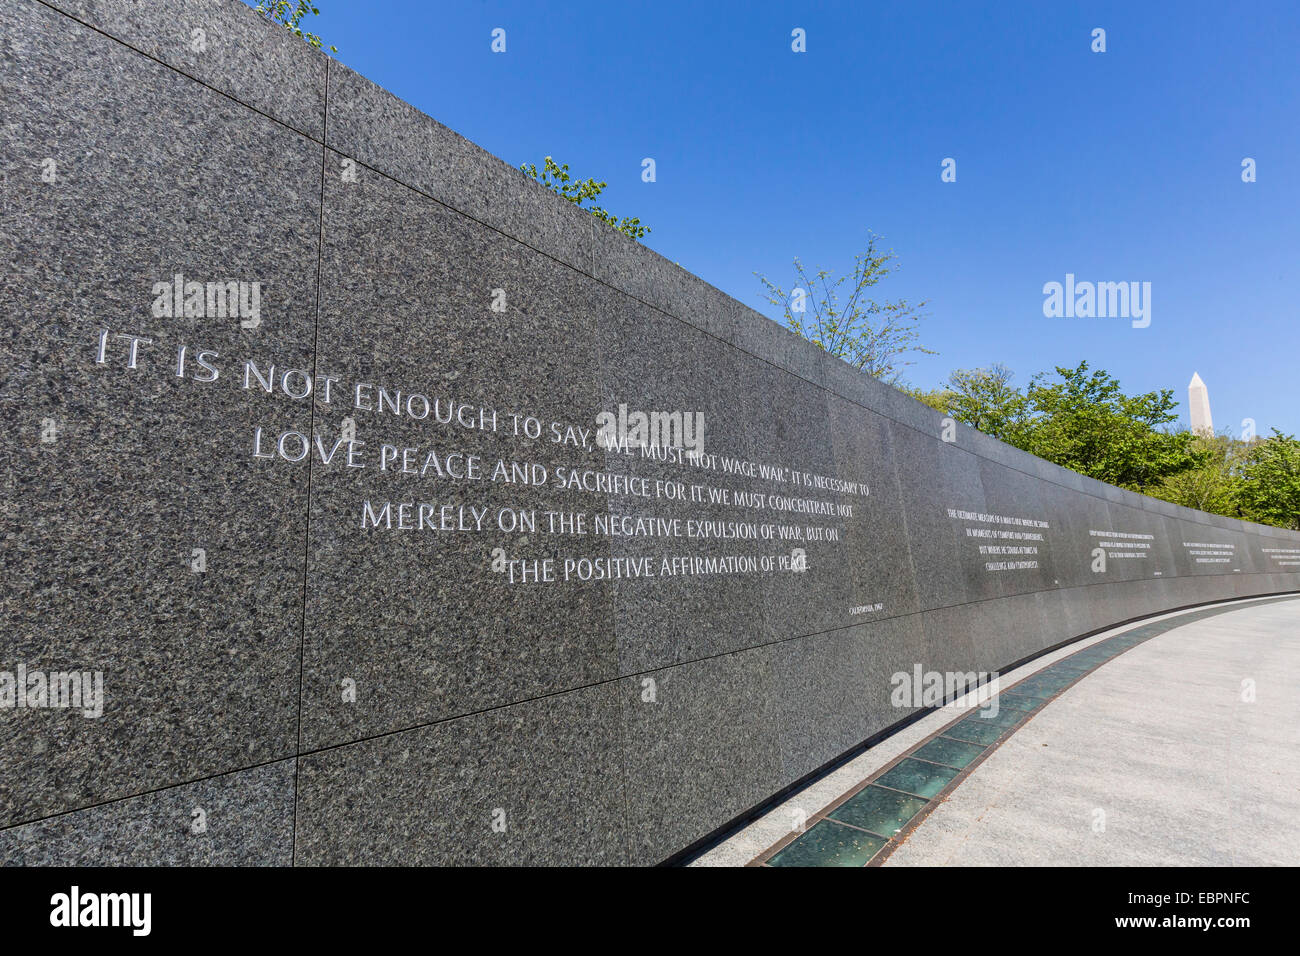 Außenansicht des Martin Luther King Memorial, Washington D.C., Vereinigte Staaten von Amerika, Nordamerika Stockfoto